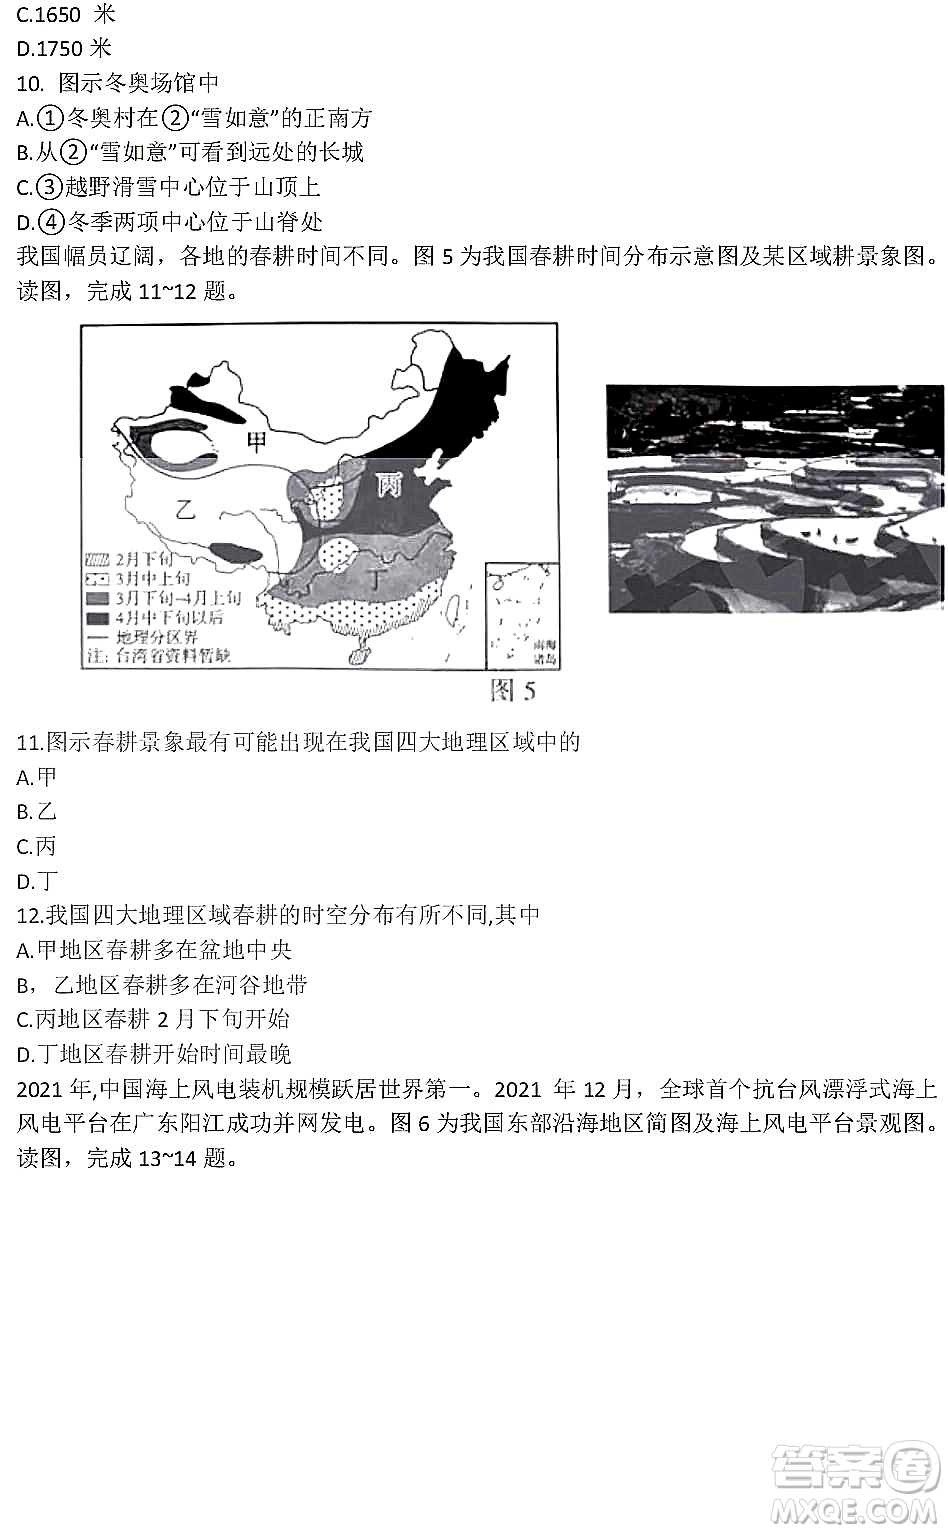 2022年河南省普通高中招生考试地理试题及答案